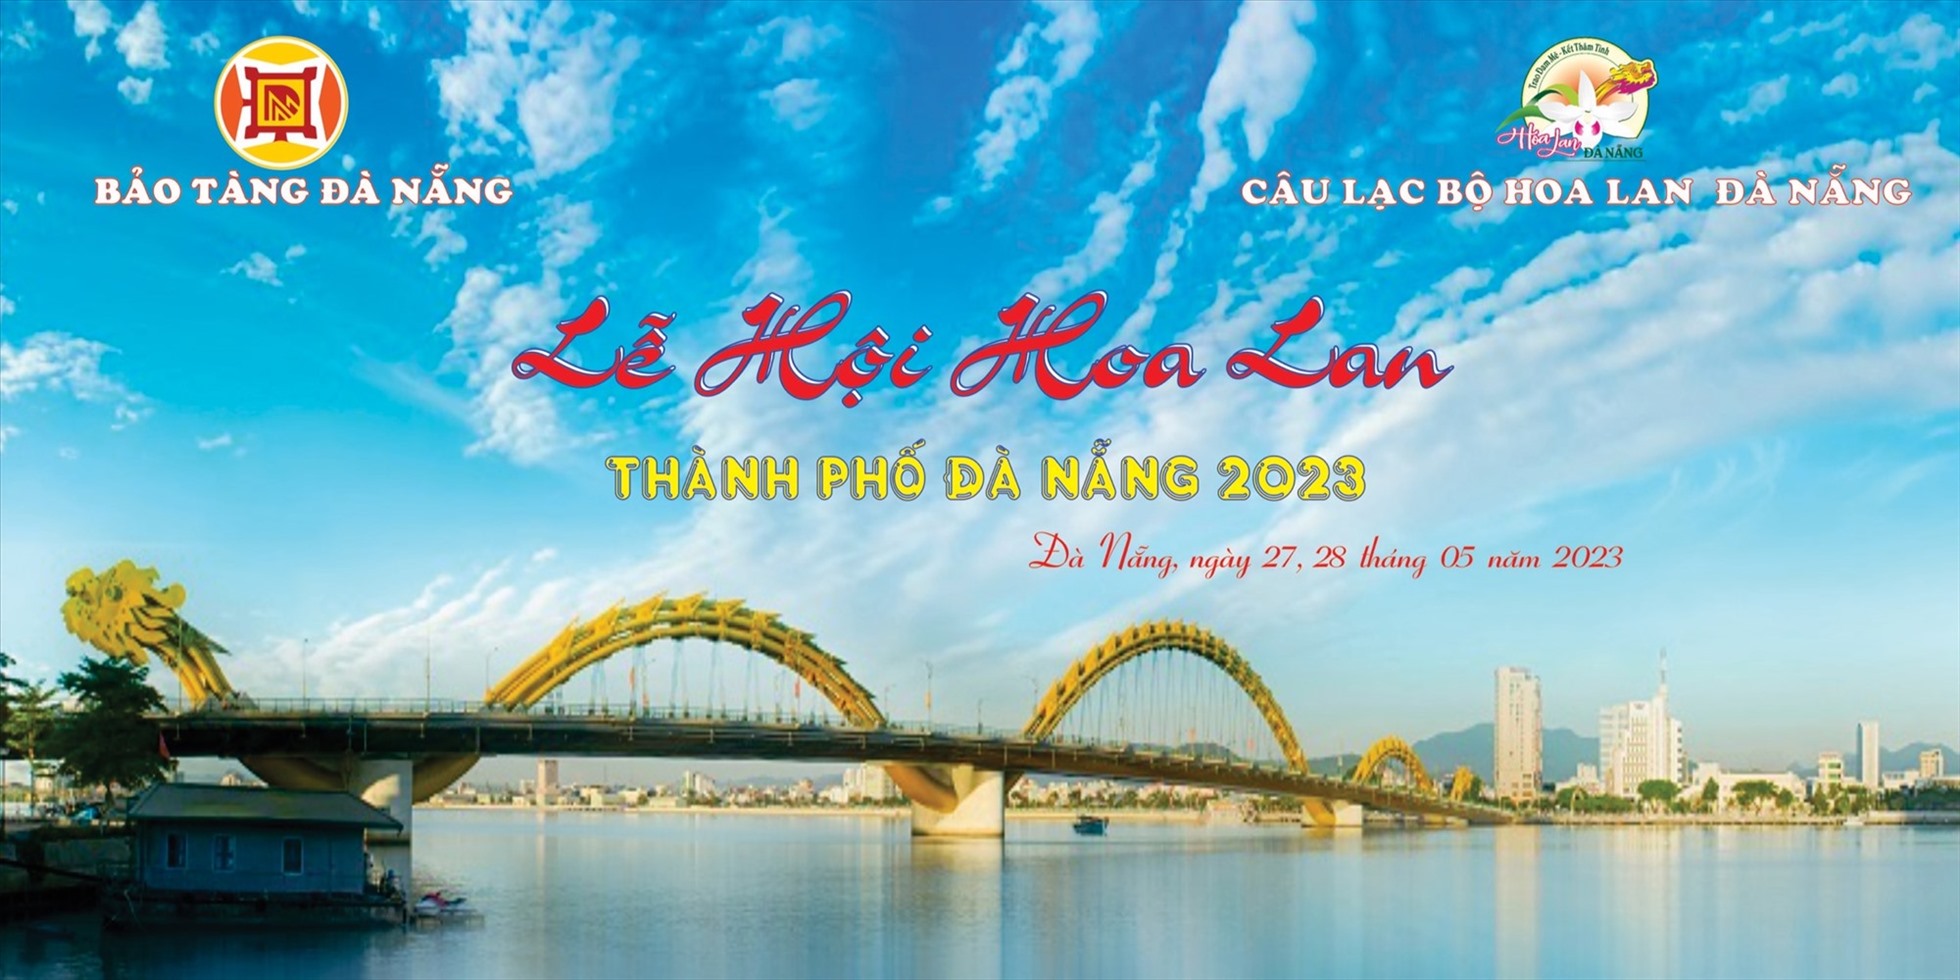 Lễ hội hoa lan TP Đà Nẵng 2023 sẽ diễn ra từ ngày 27 - 28.5. Ảnh: Bảo tàng Đà Nẵng